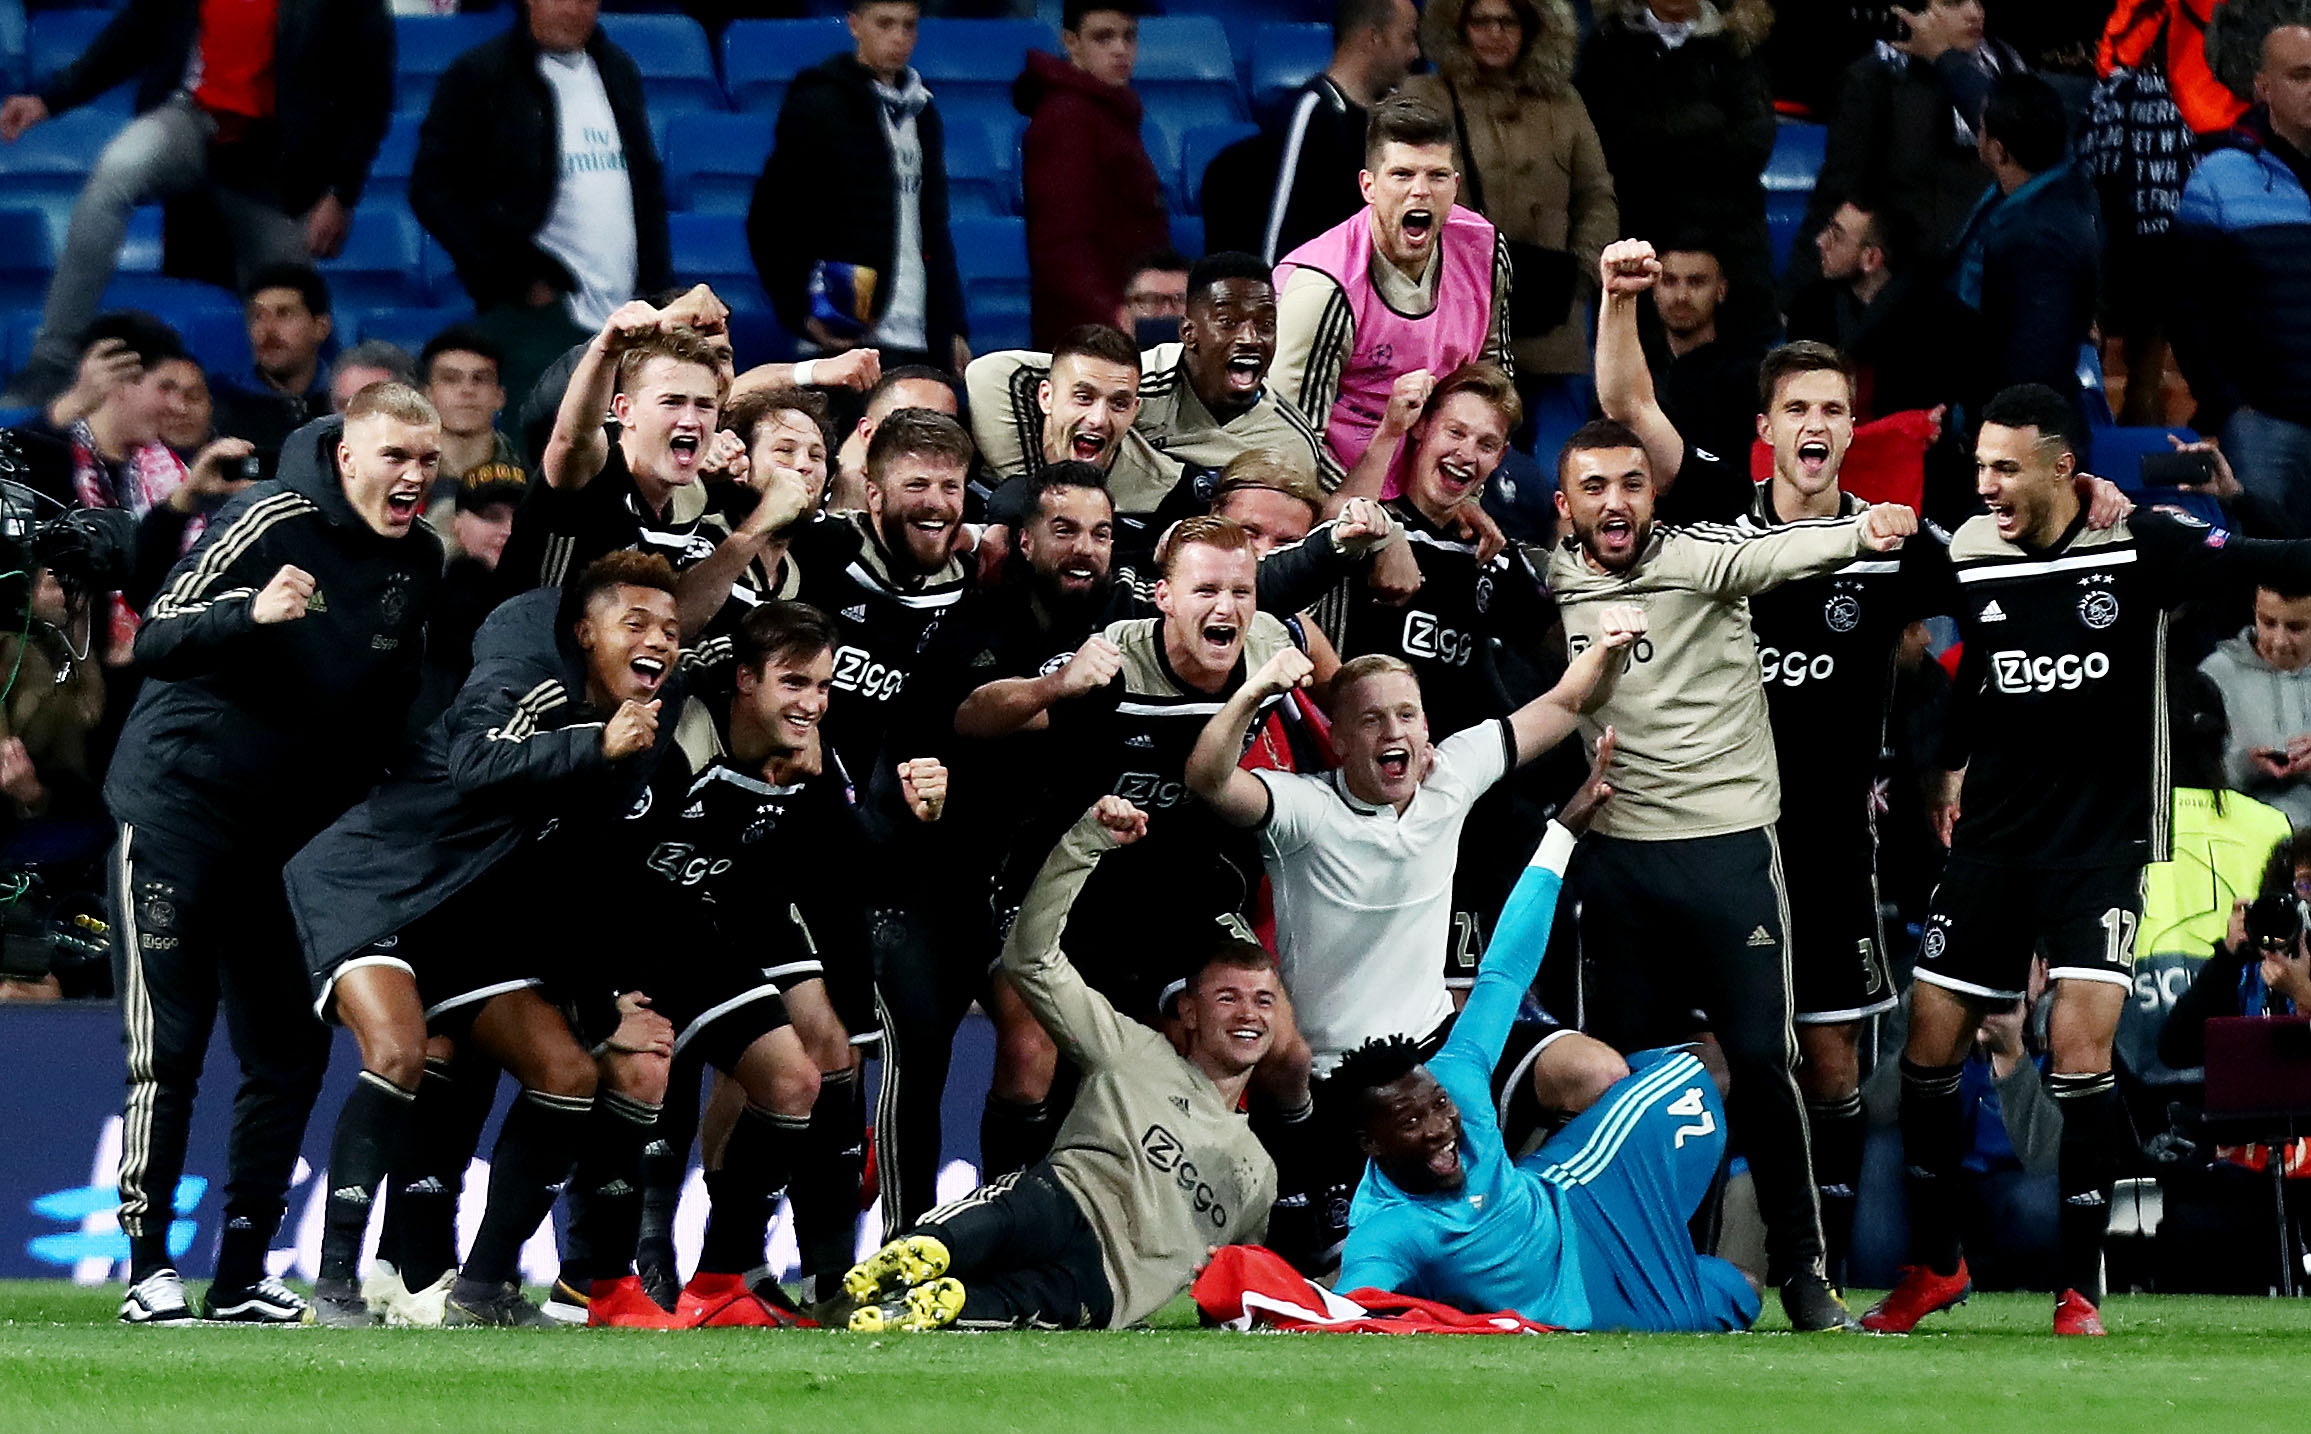 Real Madrid - Ajax in 2019